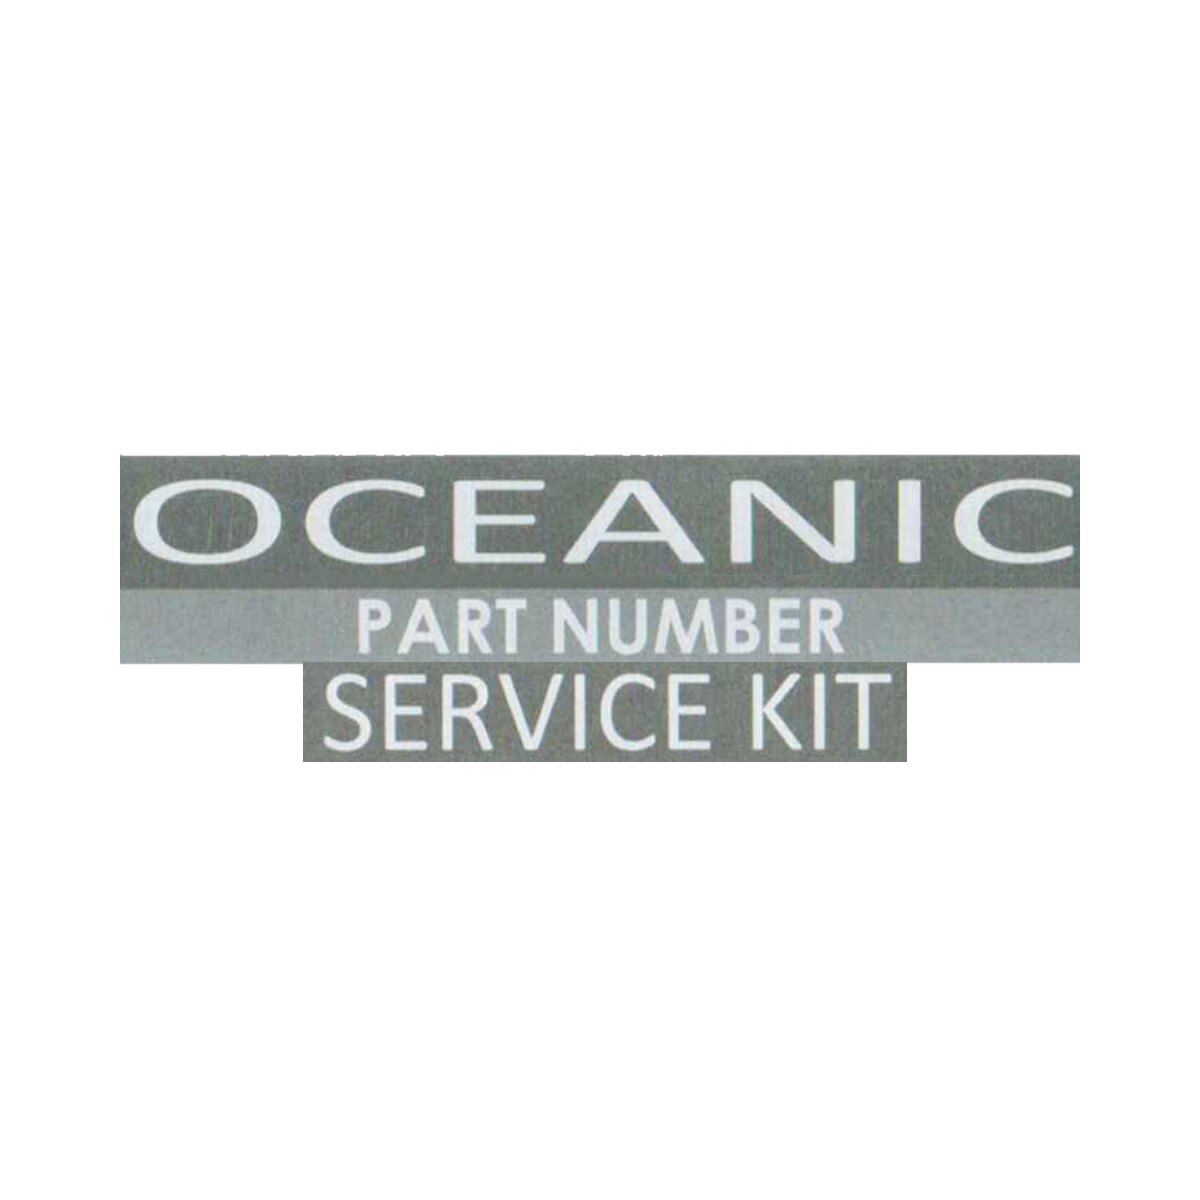 Yoke Oceanic Sport Piston DVT 1st Stage Regulator Service Kit 